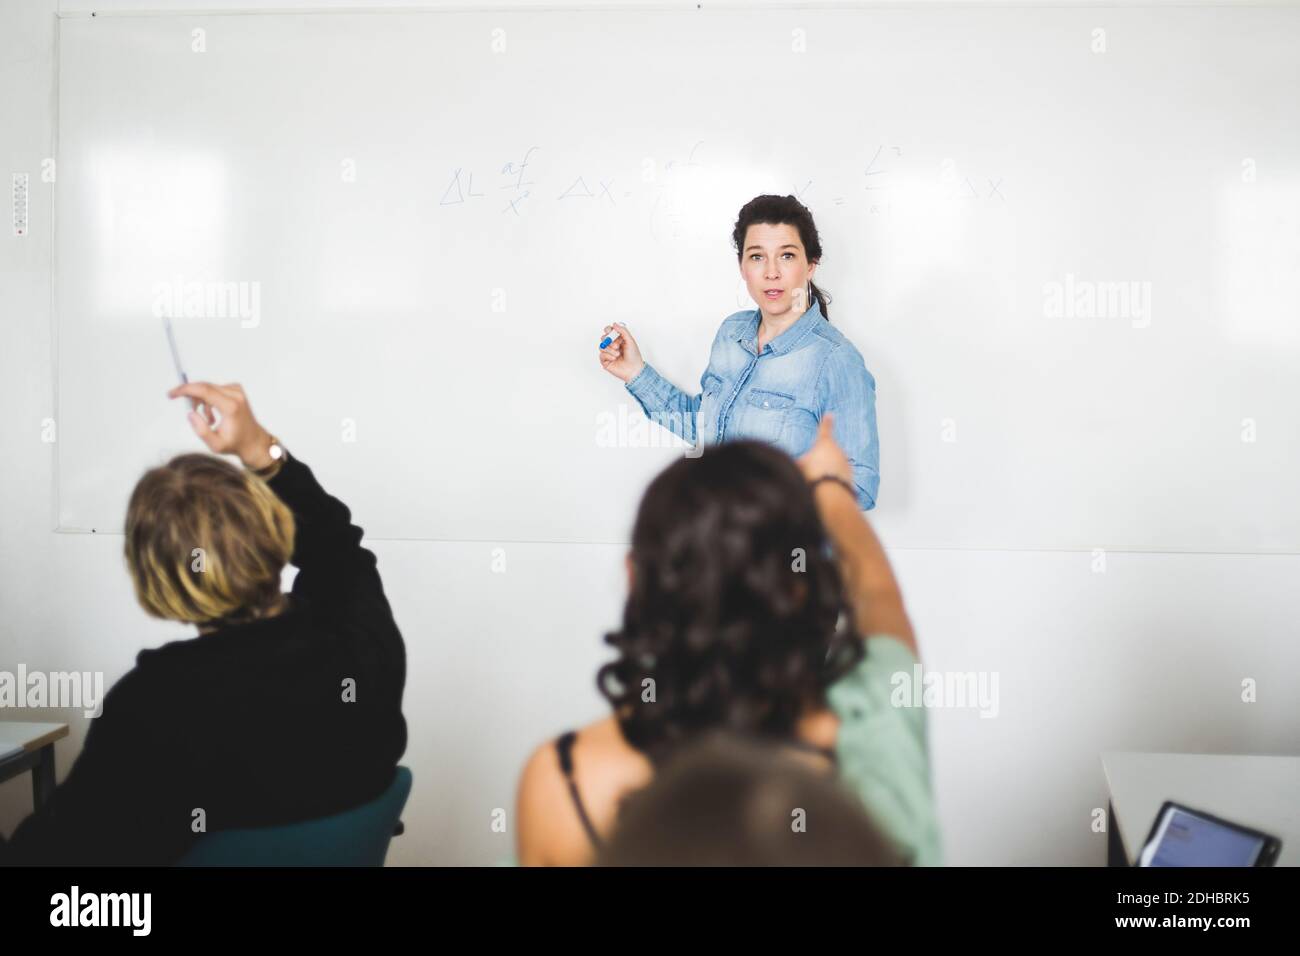 Die Schüler zeigen auf den Lehrer, der im Klassenzimmer gegen das Whiteboard steht Stockfoto